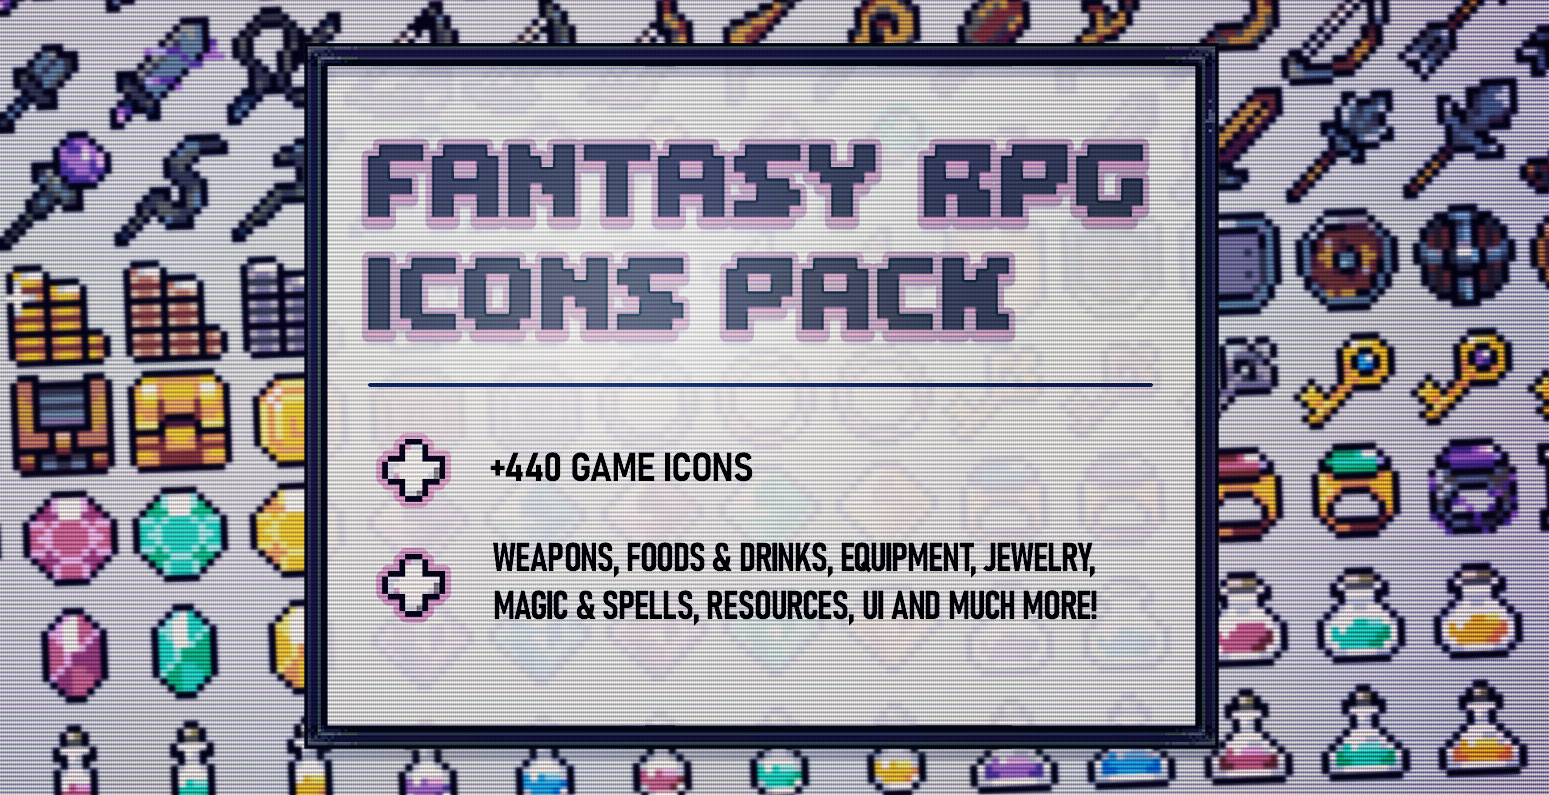 Fantasy RPG Icons Pack